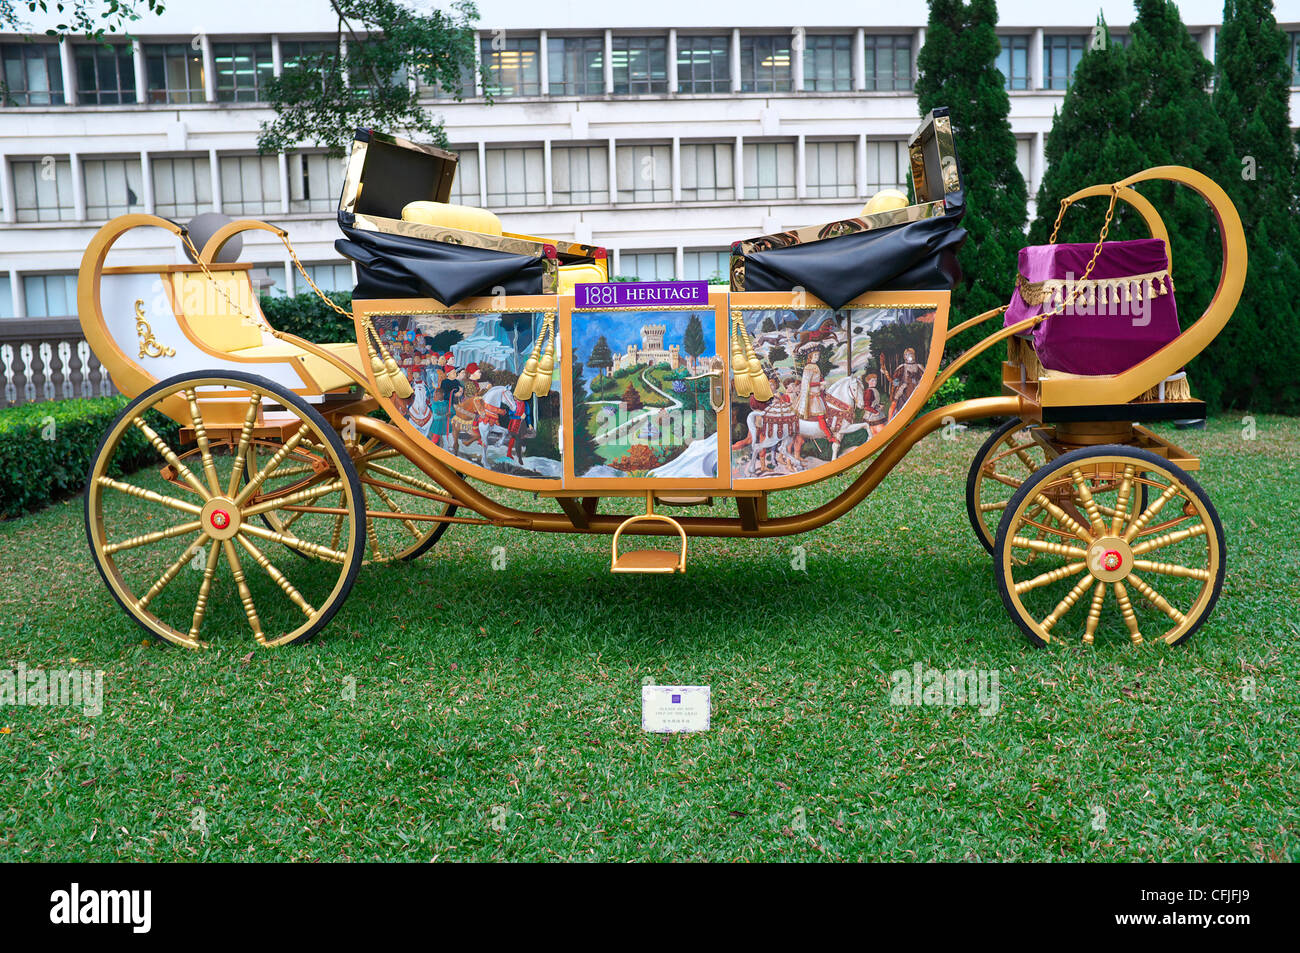 Alte Kutsche im 1881 Heritage, Hong Kong, China Stockfoto